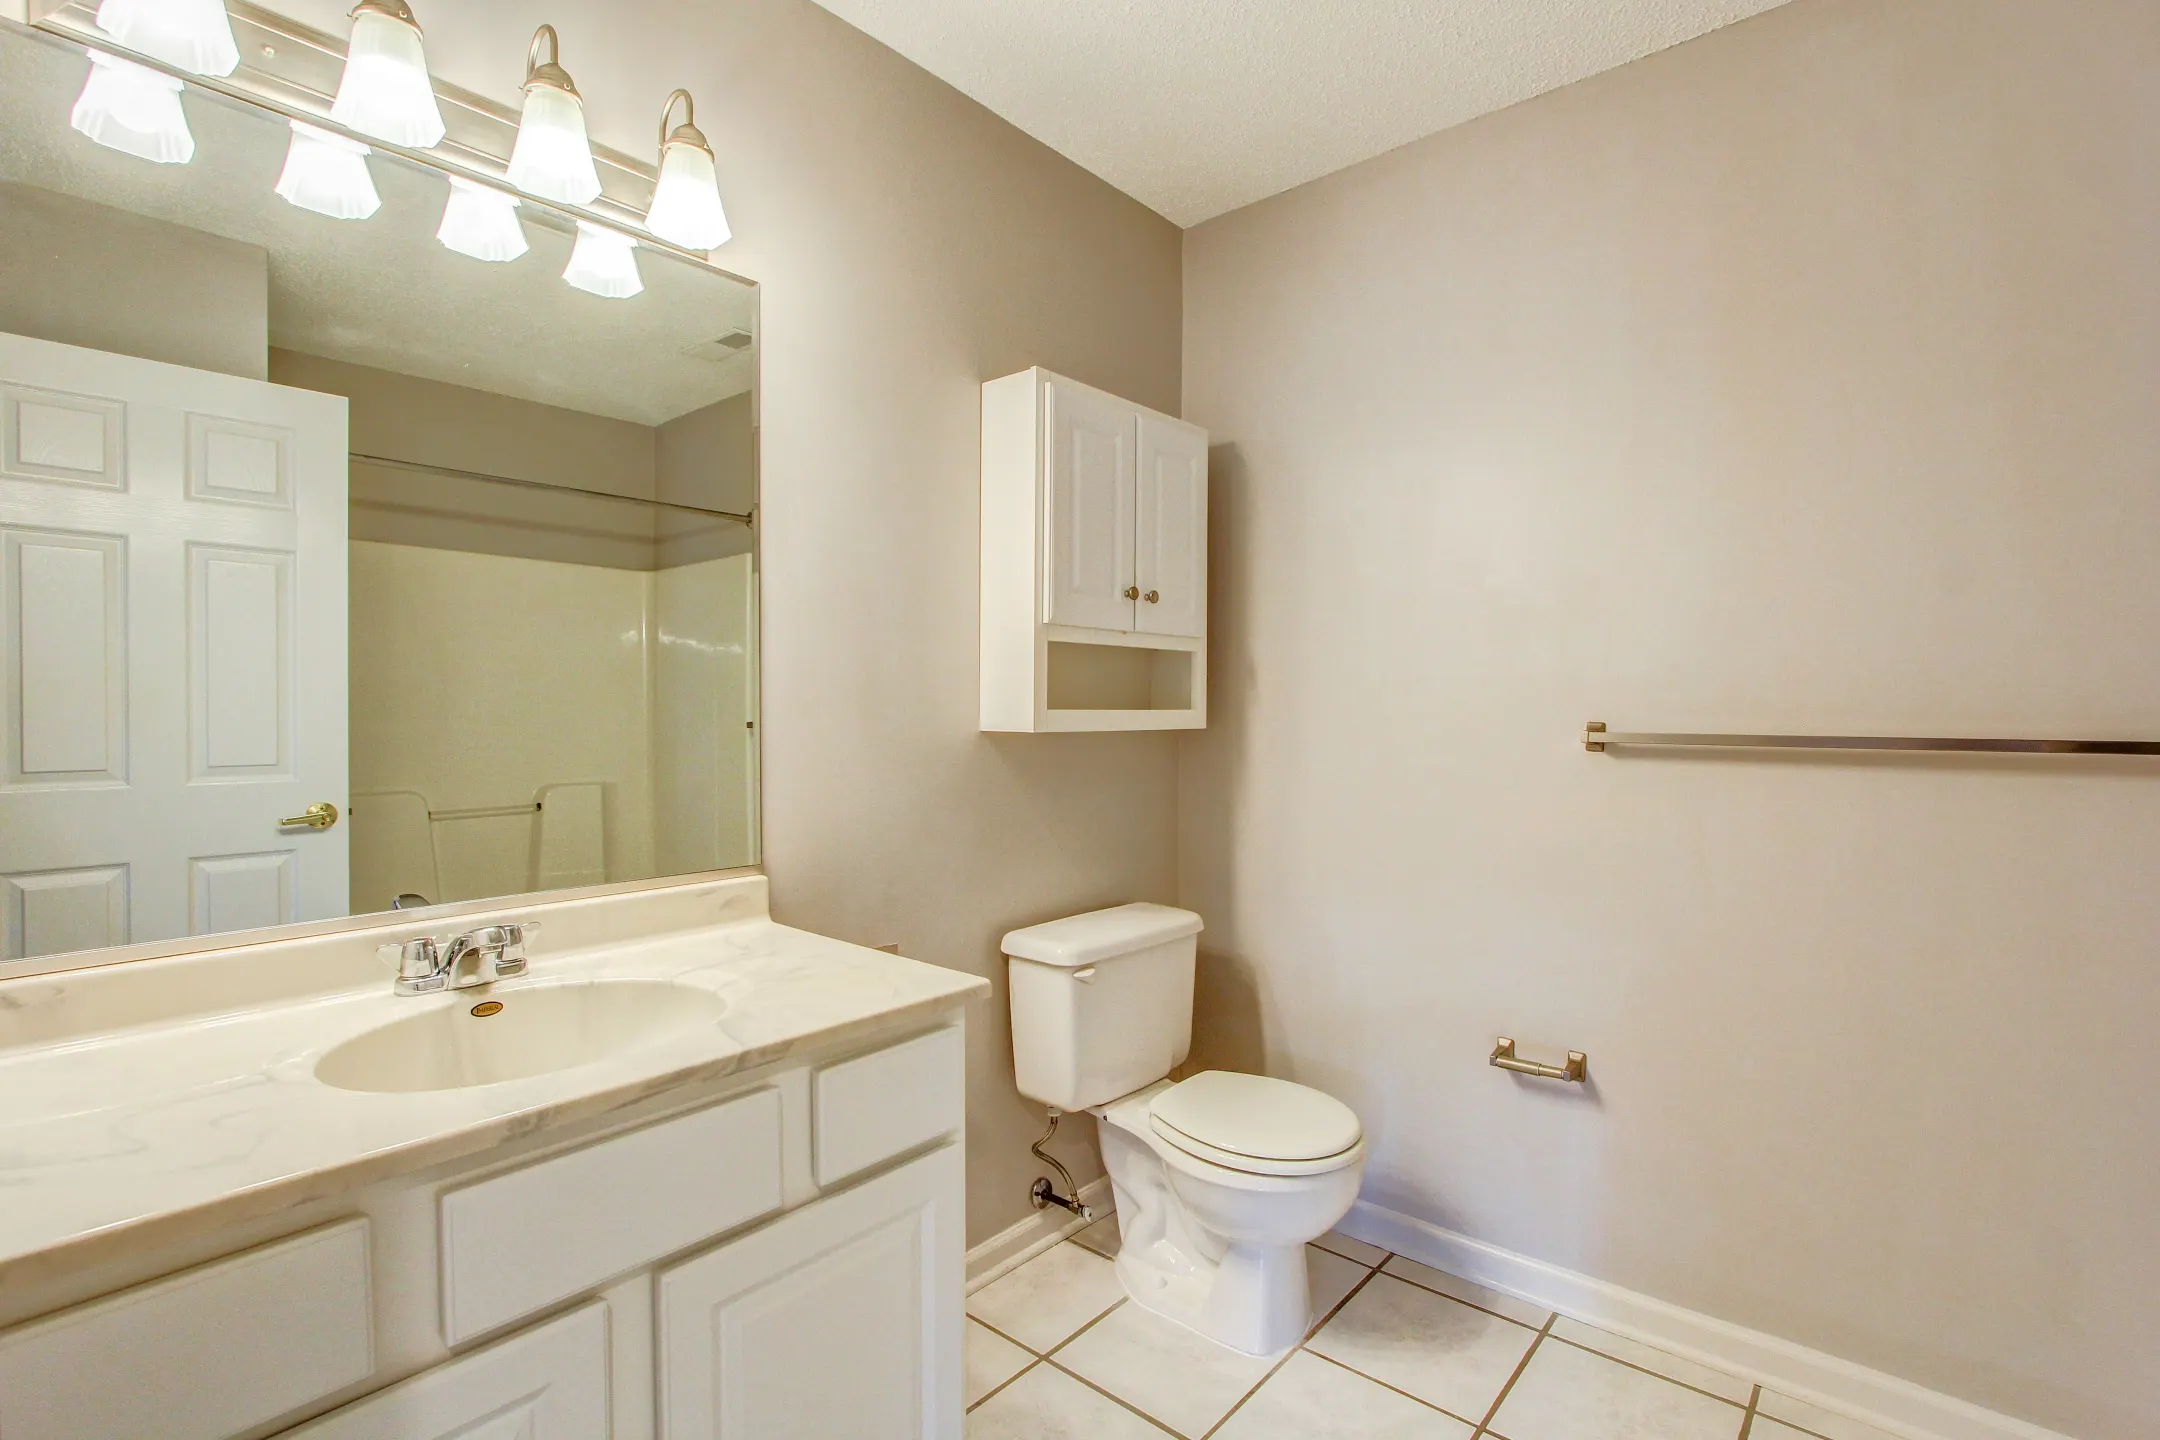 Bathroom - Bell Tower Apartments - 55+ - Buffalo, NY